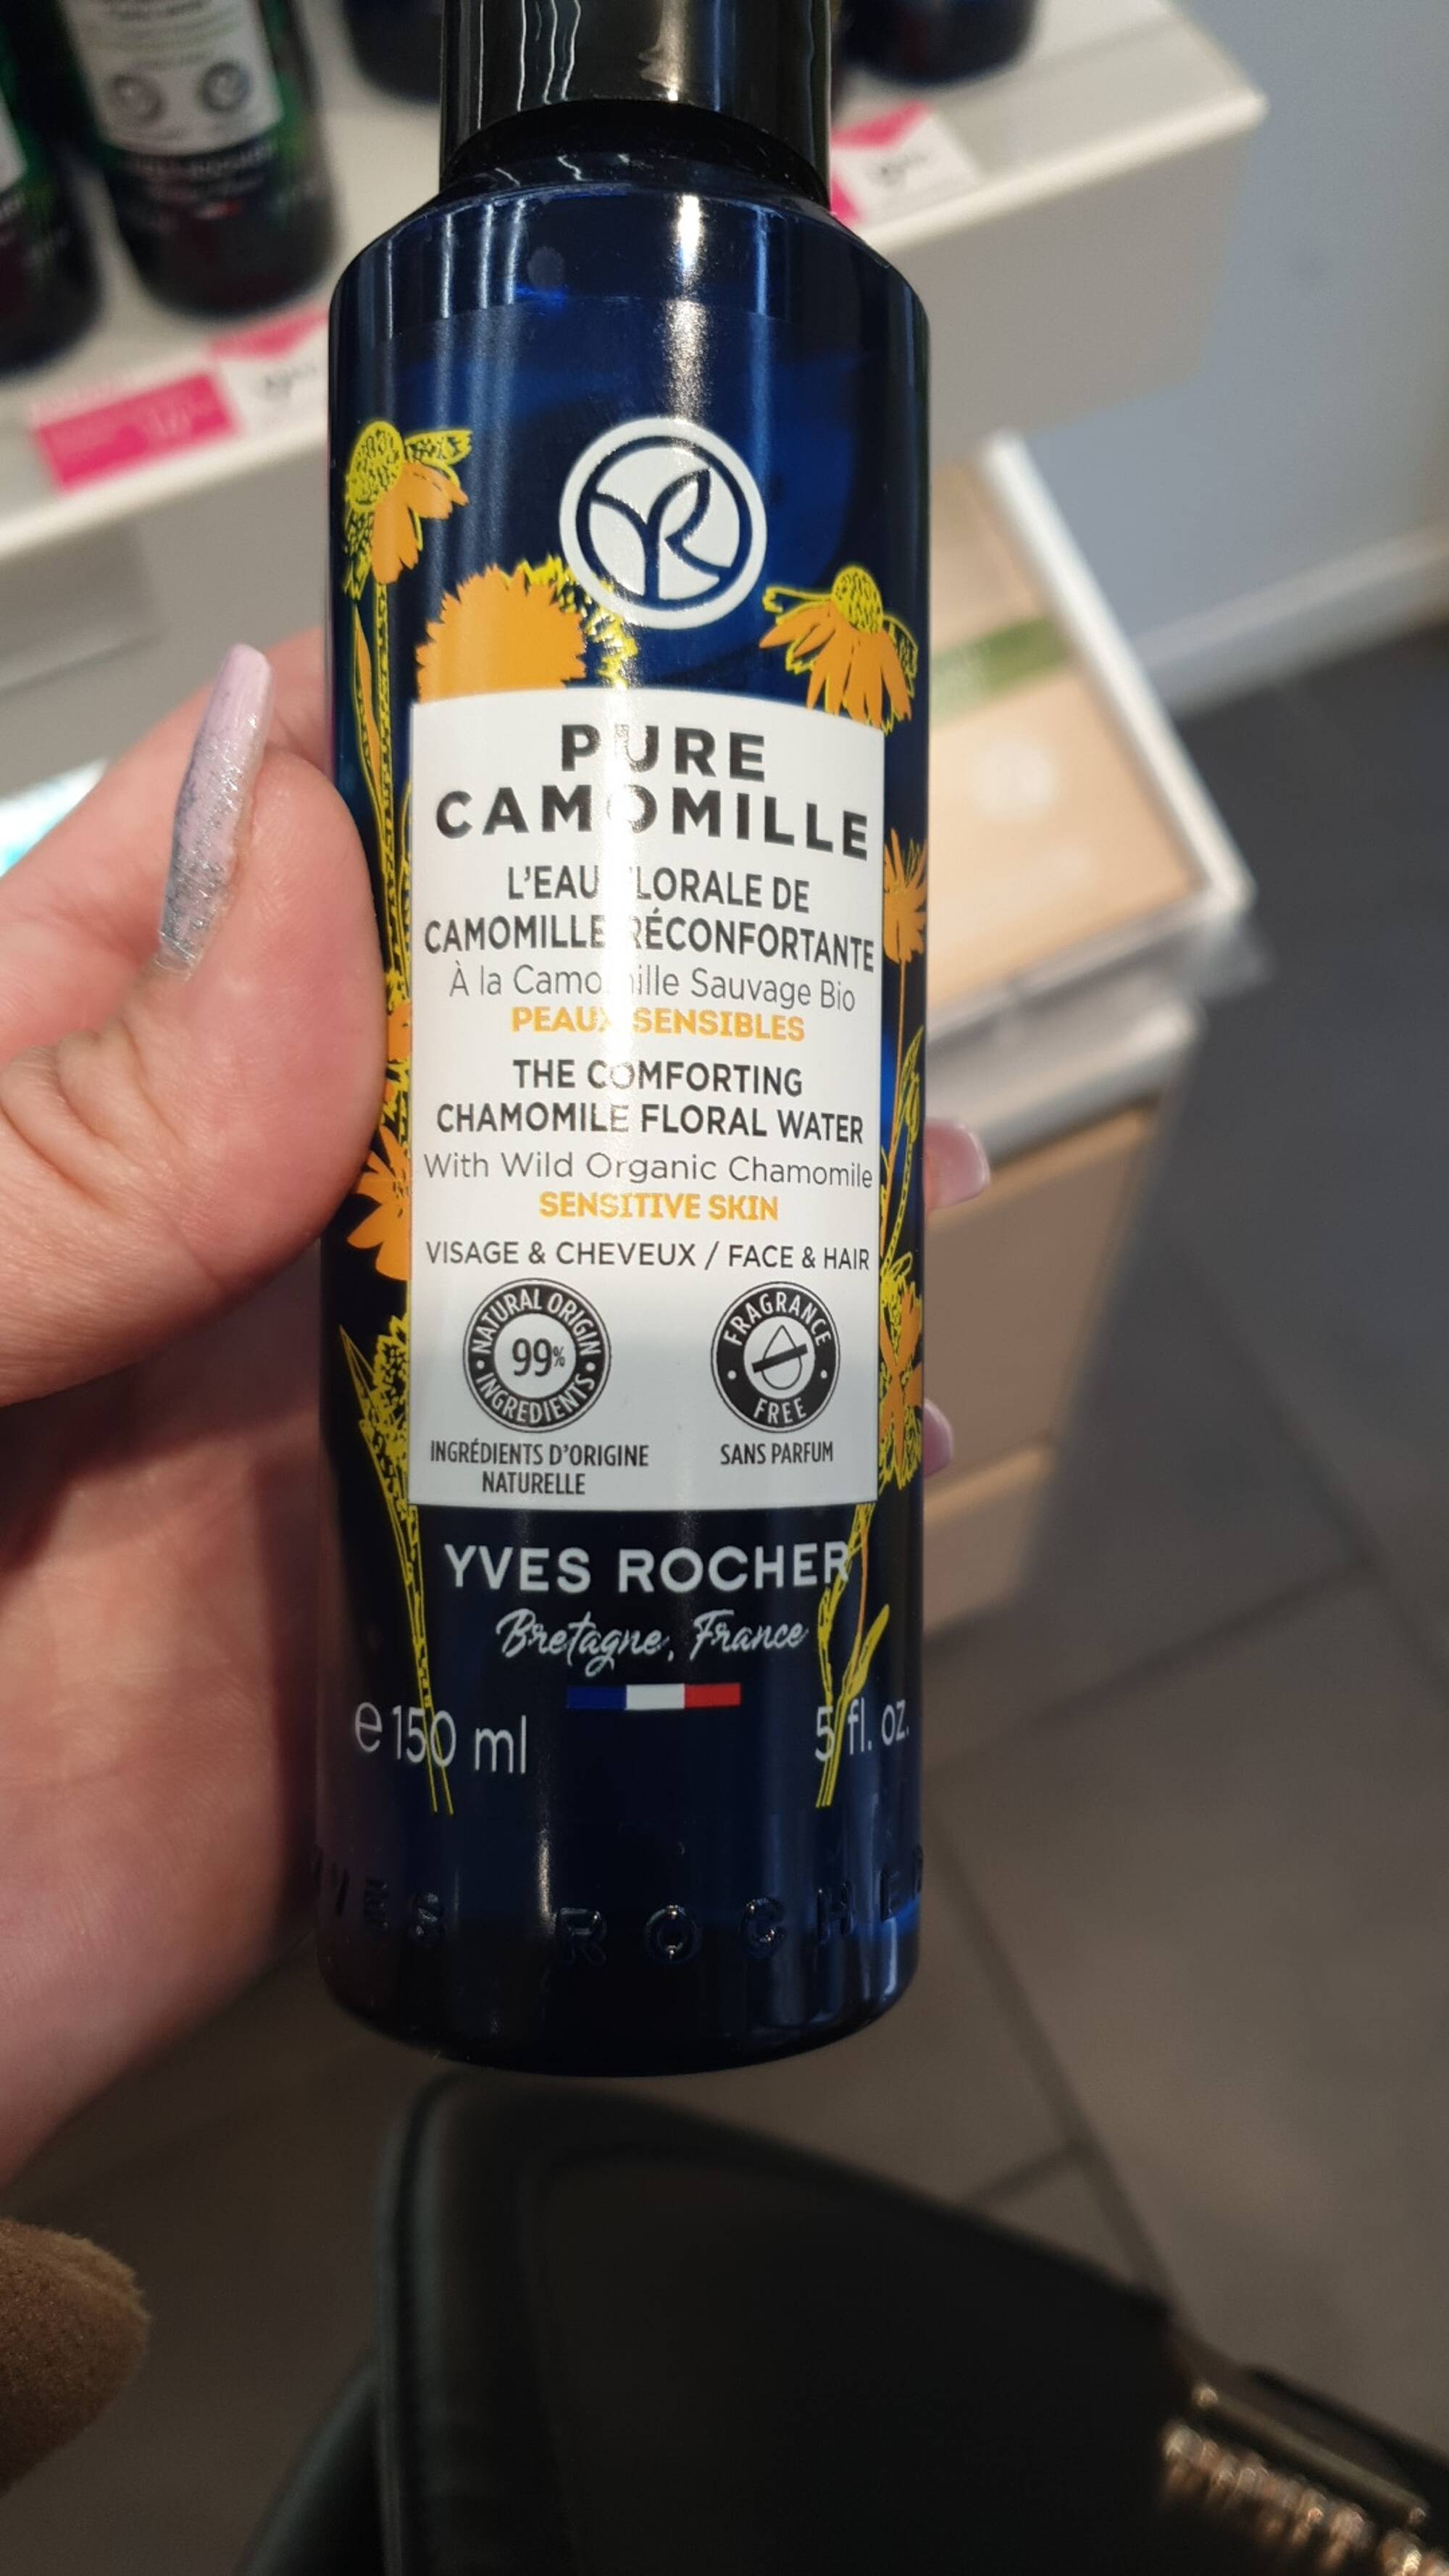 YVES ROCHER - Pure Camomille - L'eau florale de Camomille réconfortante